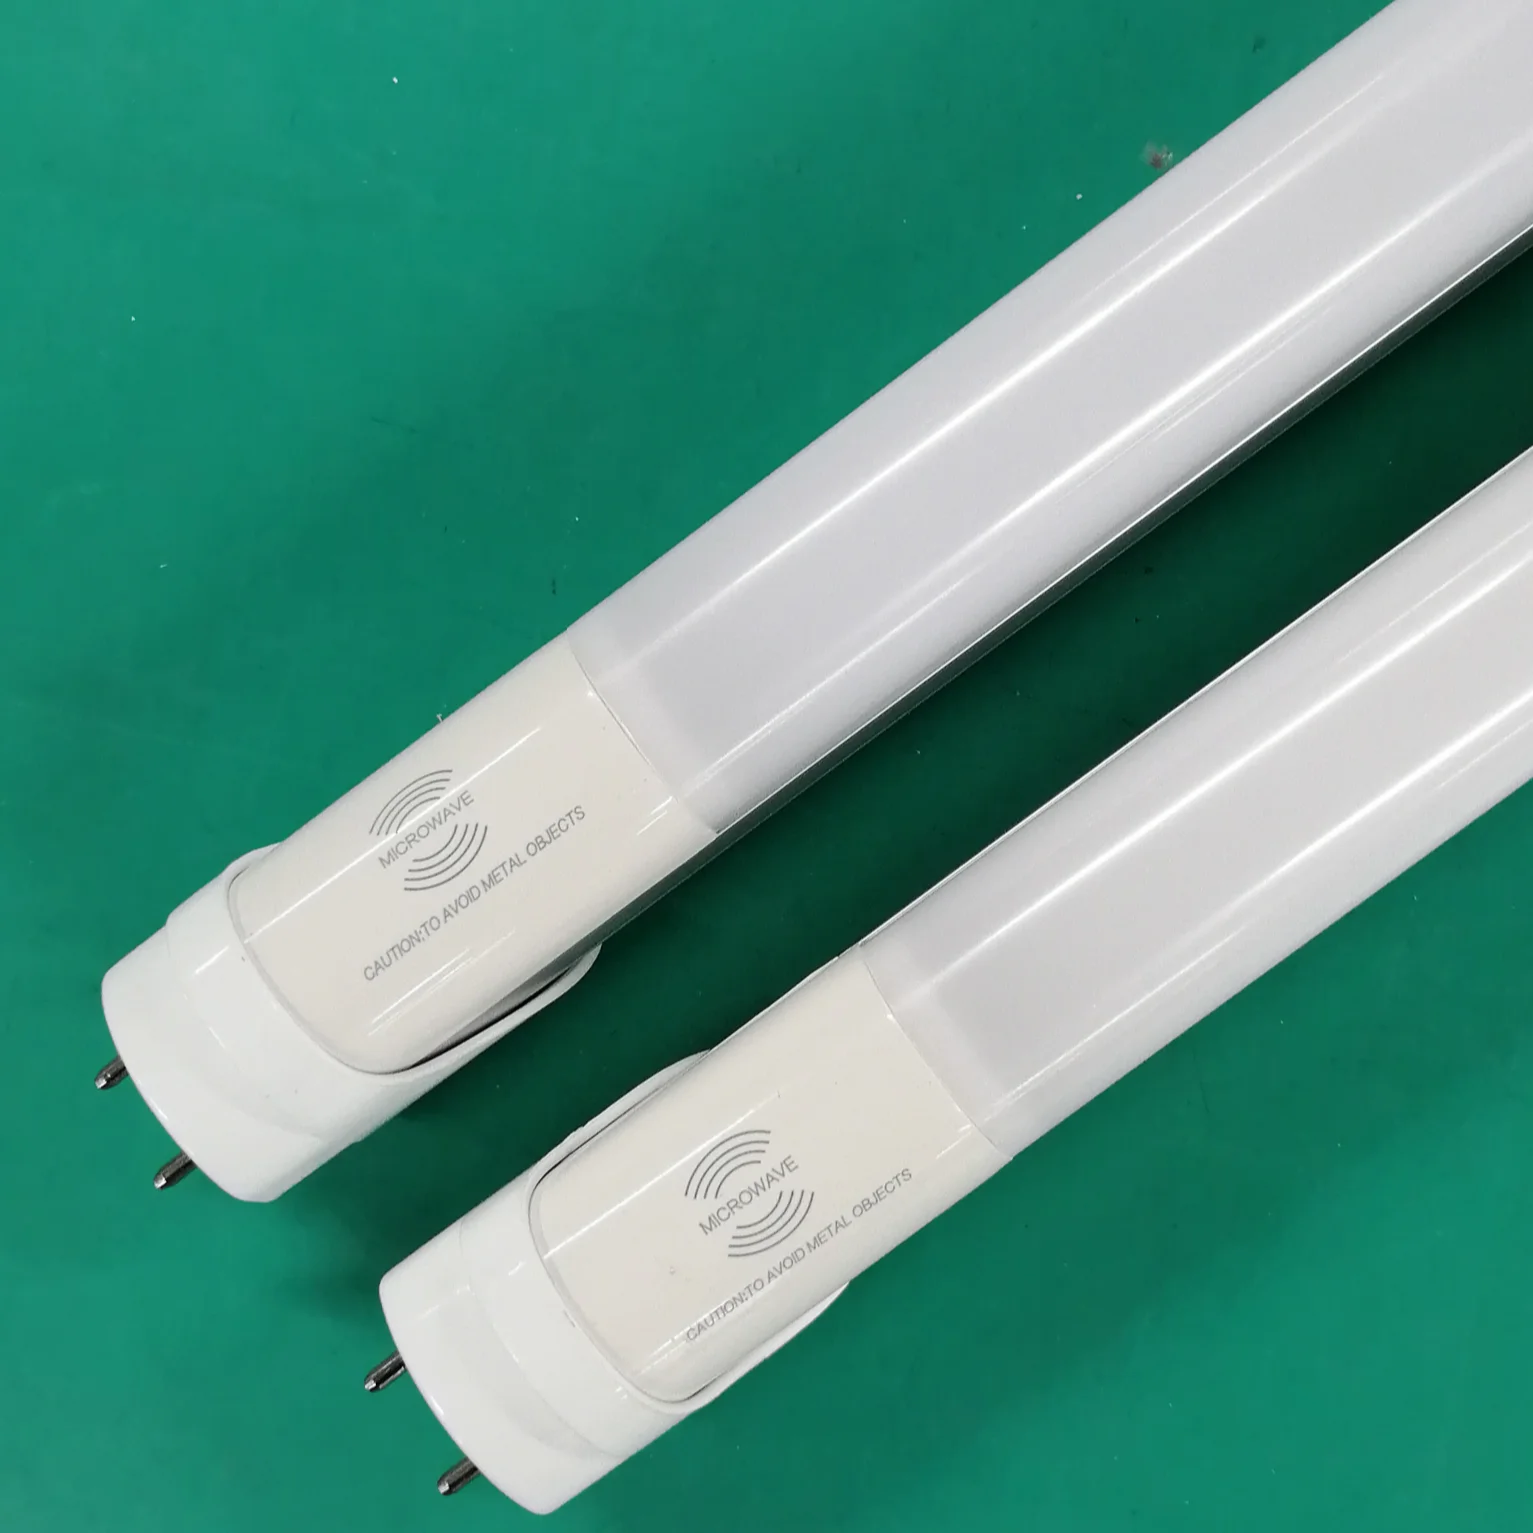 Factory Wholesale Rador Sensor tube8 led tube light 18w TL0012/T8 tube to T5 endcap Microwave Sensor light for project